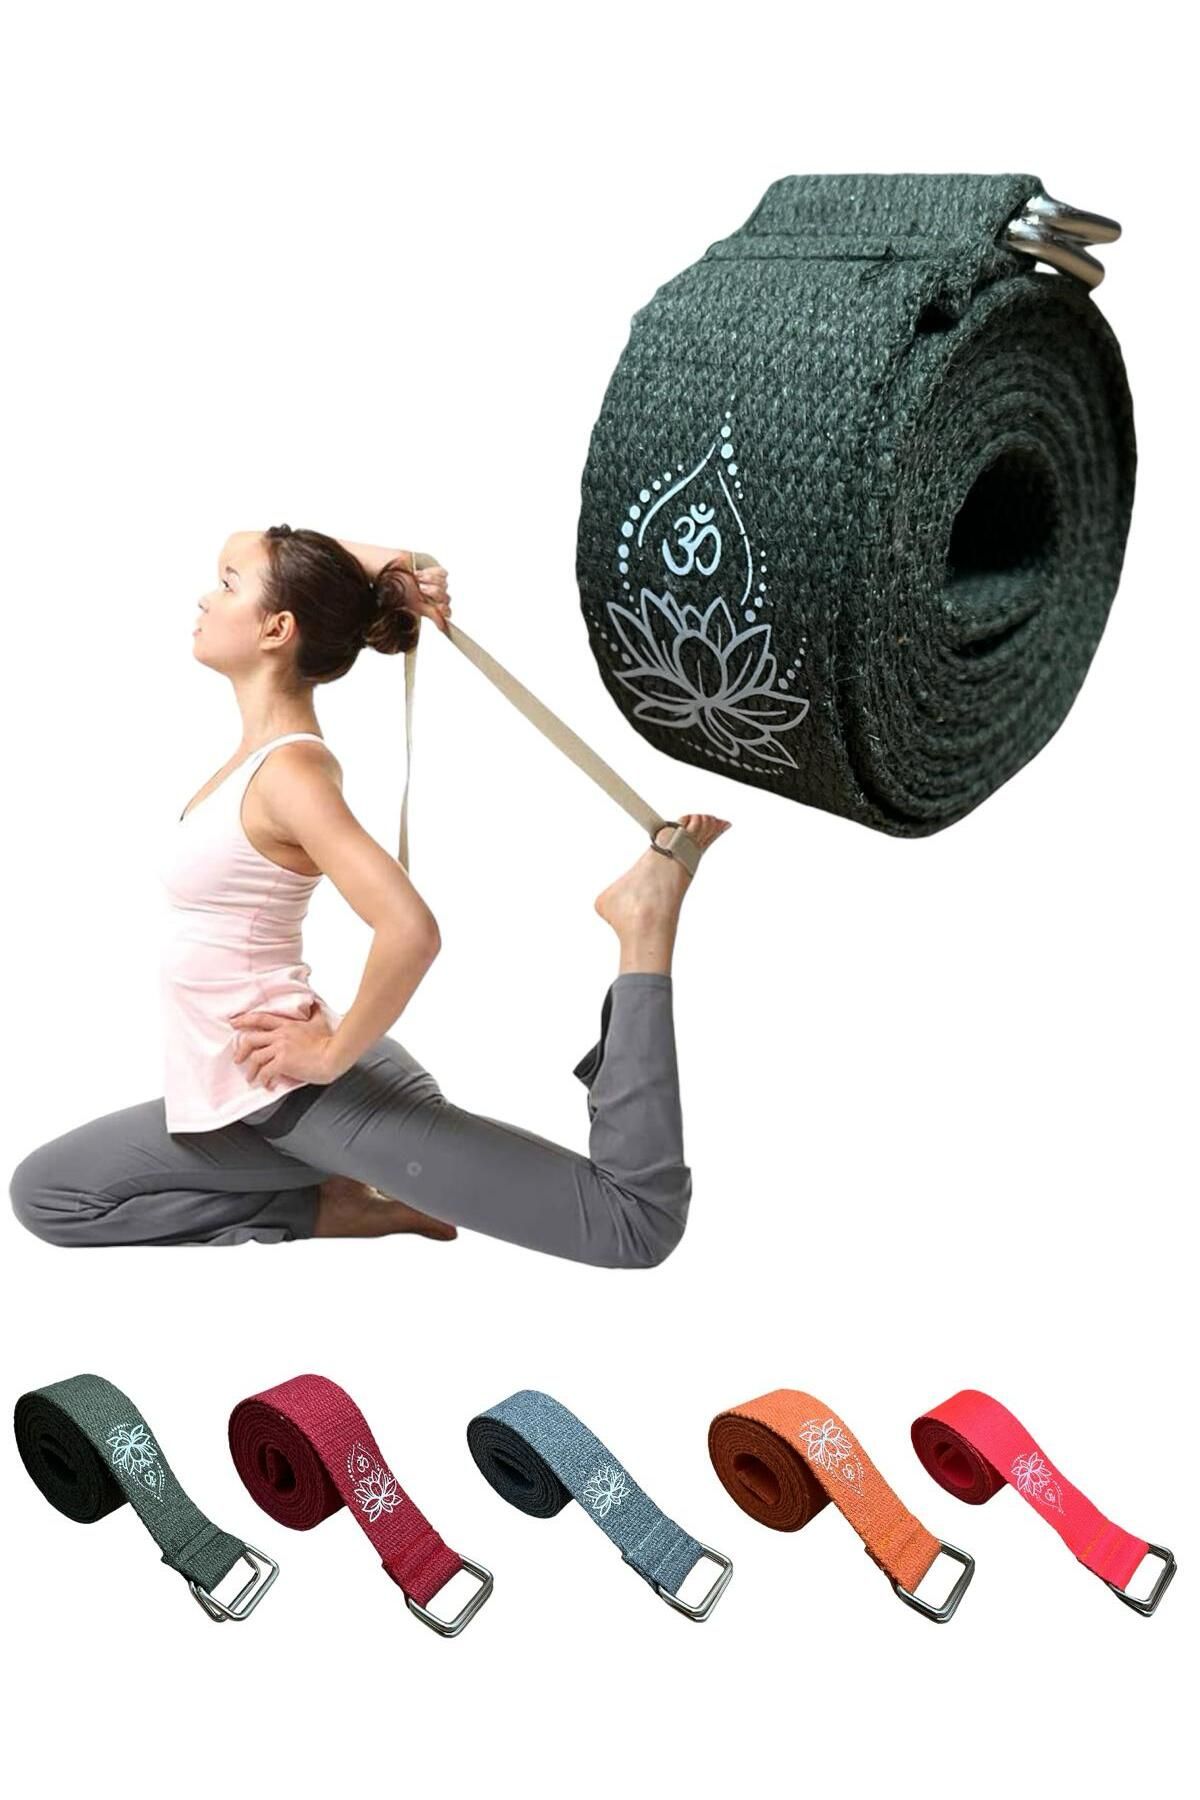 REMEGE Yoga Kemeri  - Yoga Germe Kayışı - Lotus Baskılı Yoga Kemeri 180 Cm Çift Halkalı